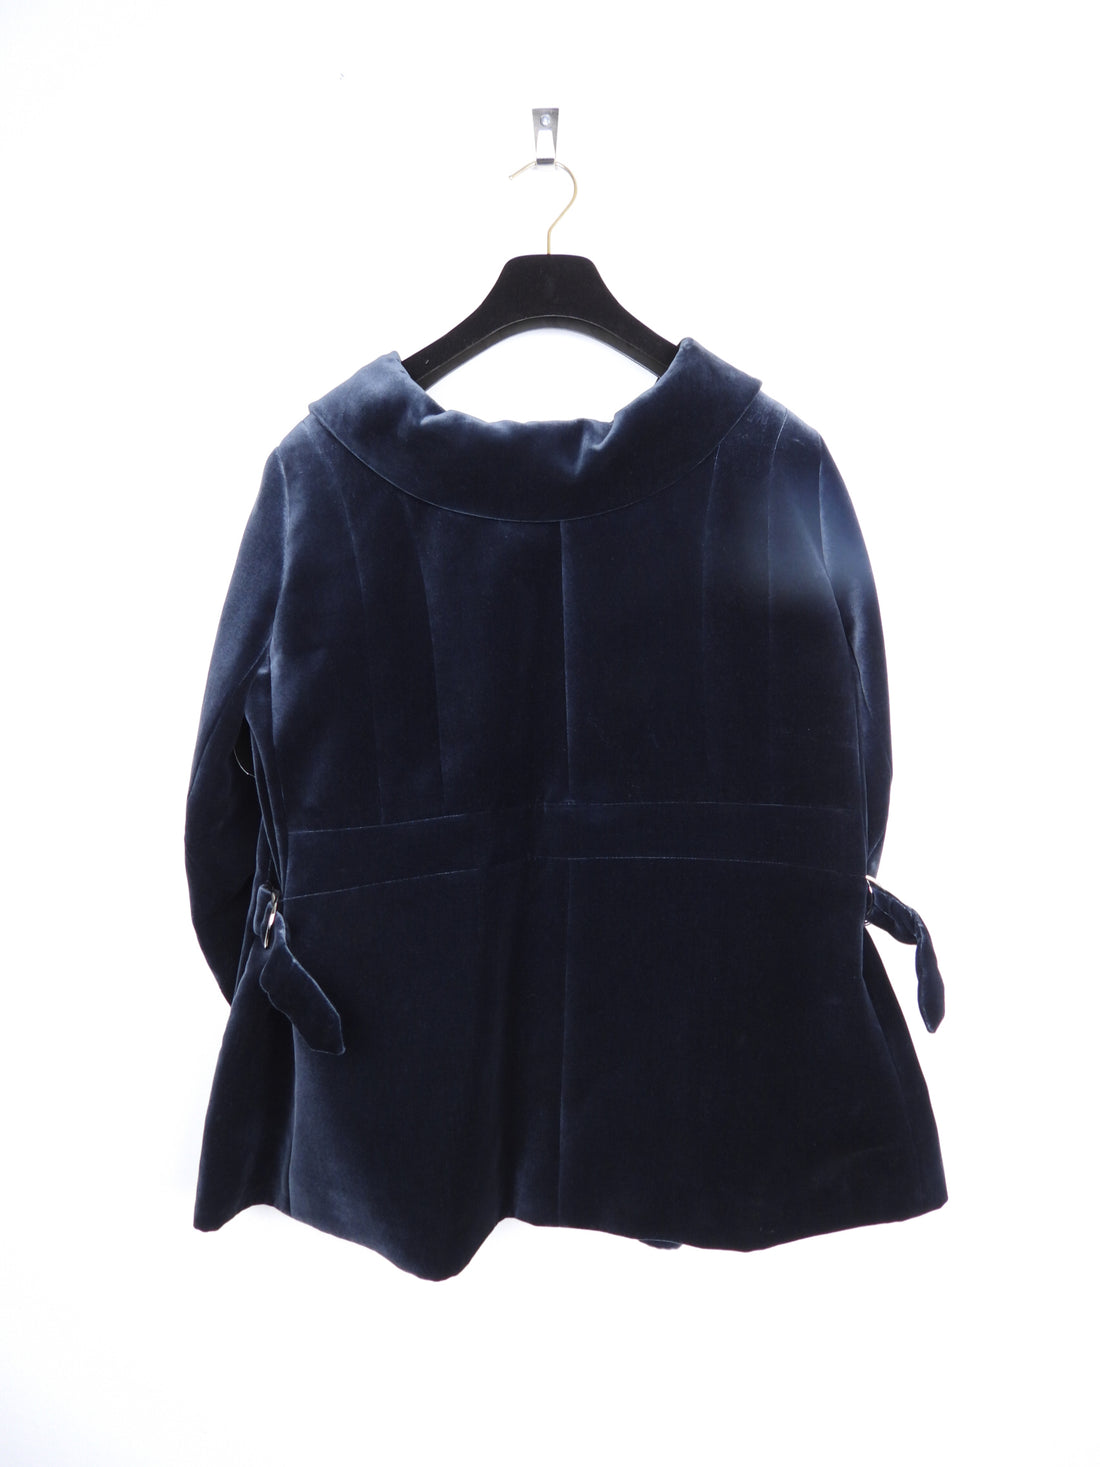 Velvet jacket Louis Vuitton Blue size XS International in Velvet